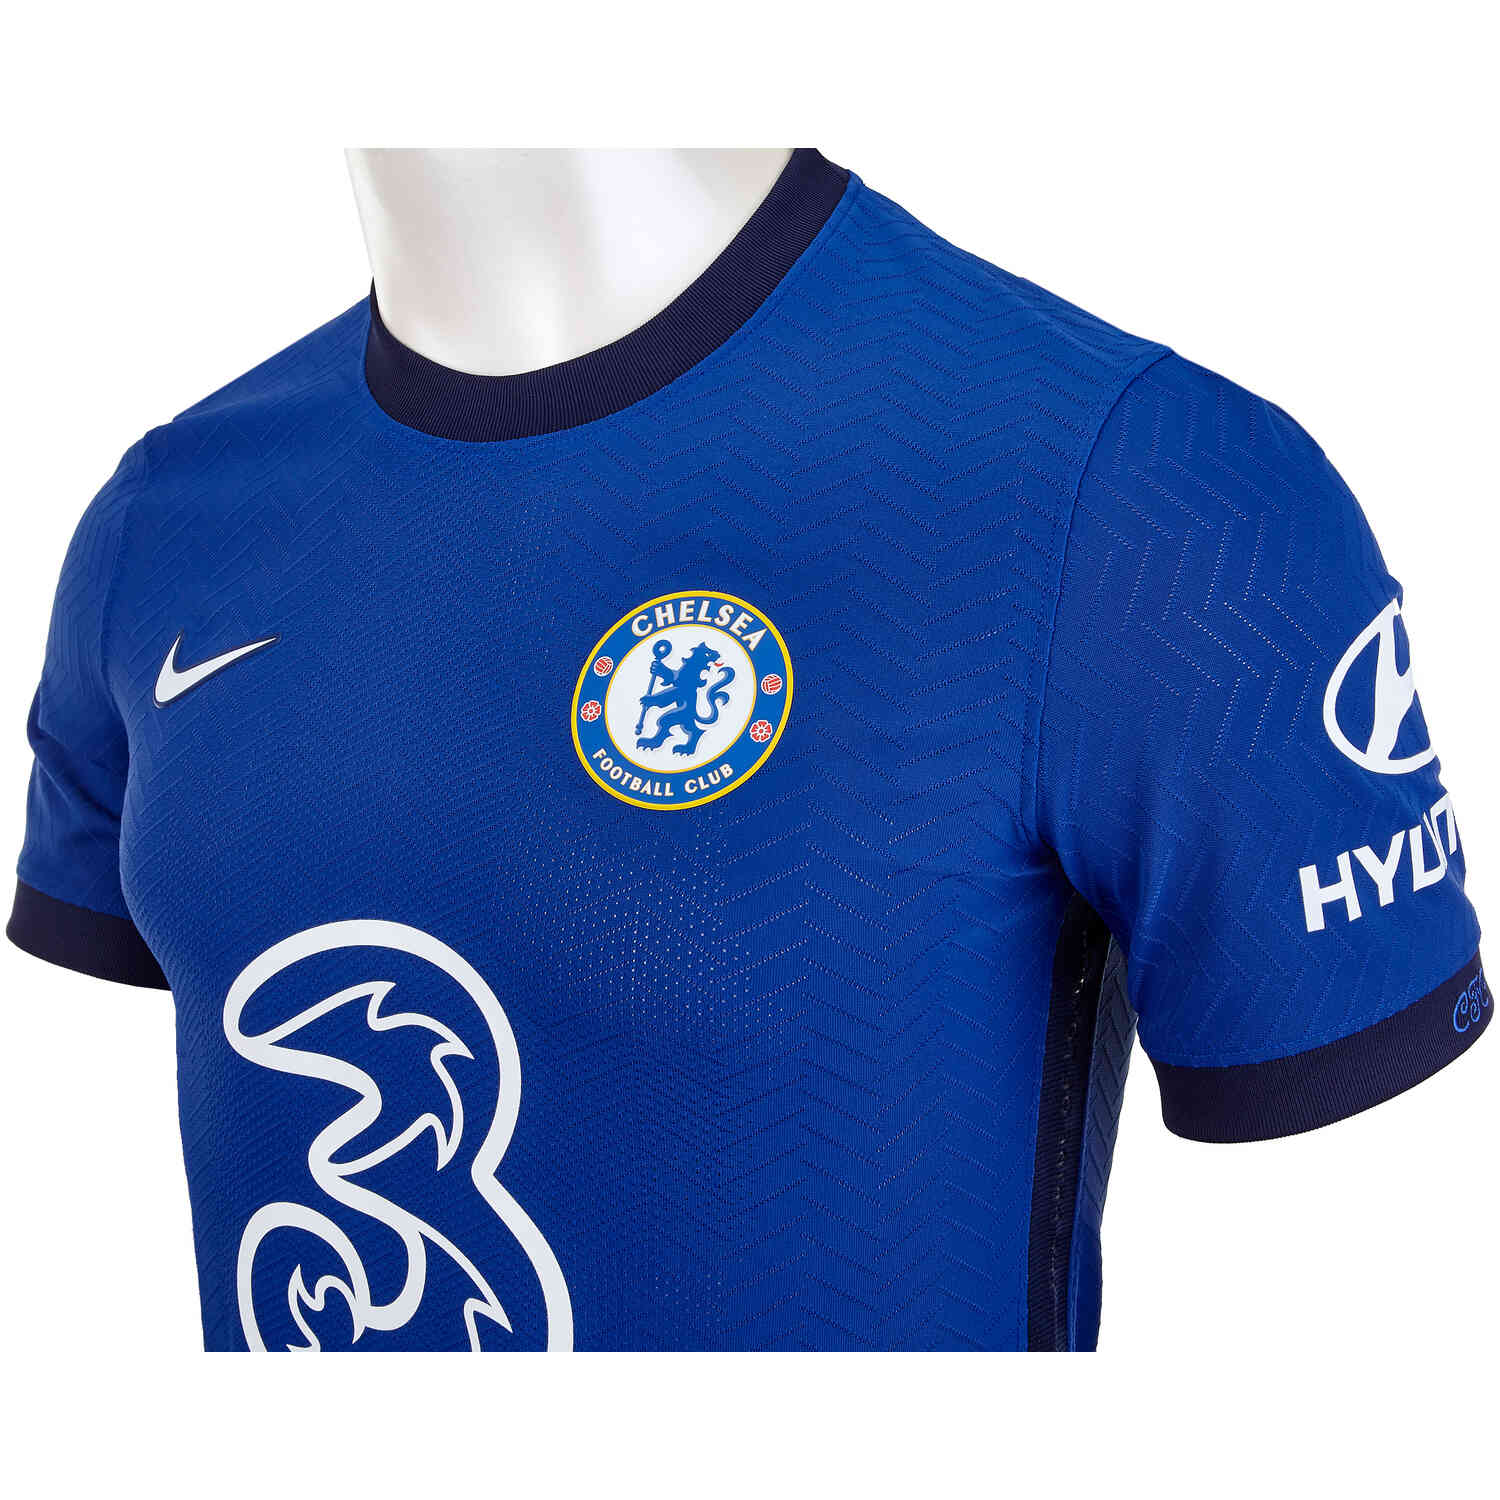 2020/21 Nike Chelsea Home Match Jersey - SoccerPro